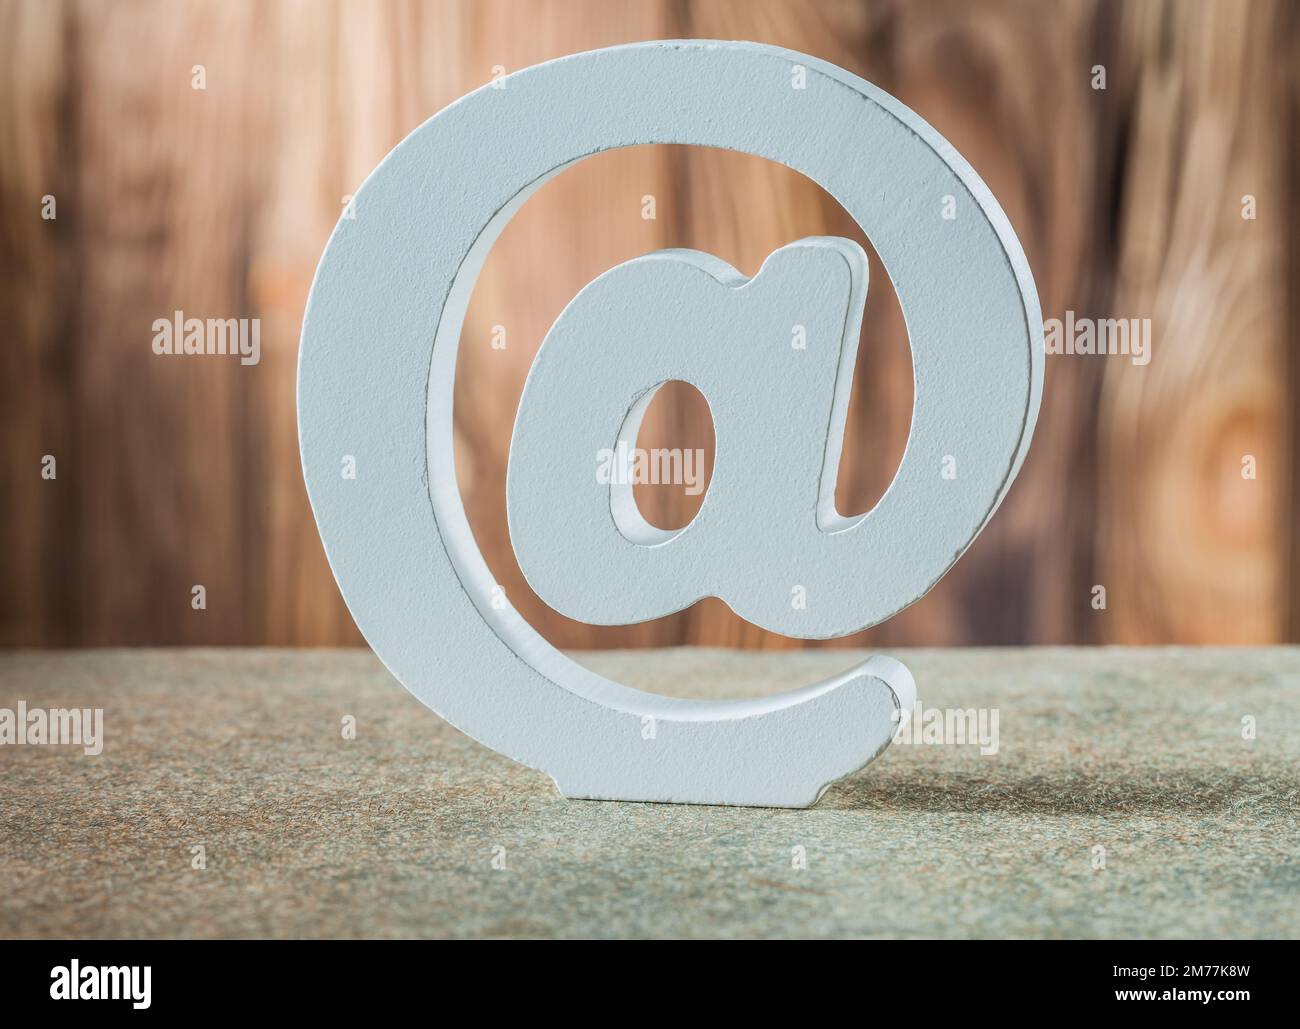 simbolo e-mail in ceramica bianca su sfondo in legno d'epoca Foto Stock